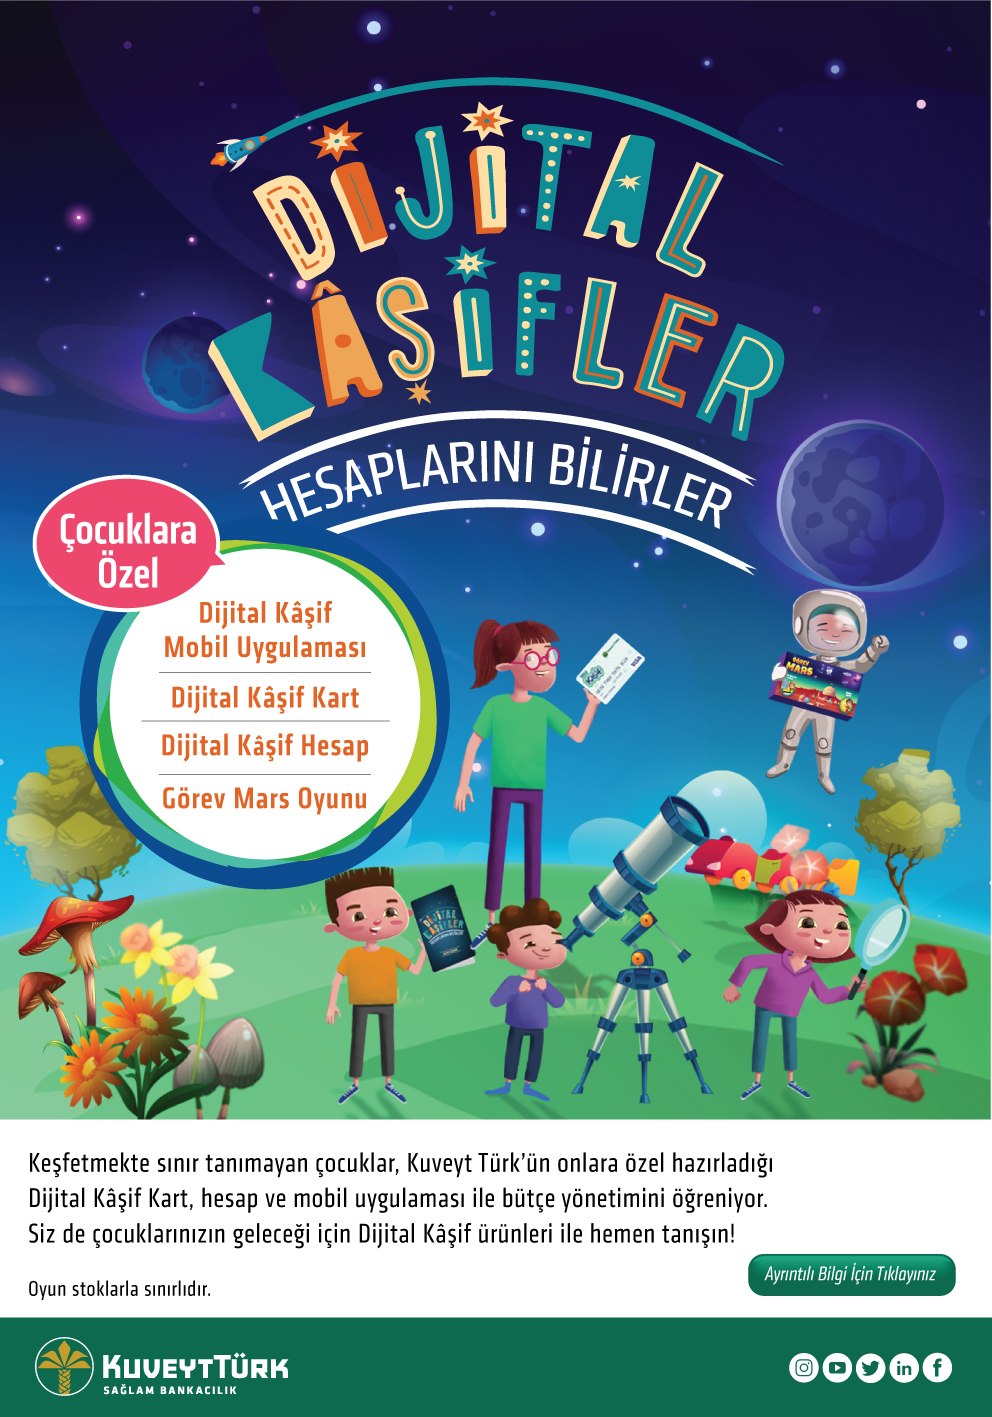 Kuveyt Türk’ten çocuklar için yepyeni bir ürün: “Dijital Kâşif”